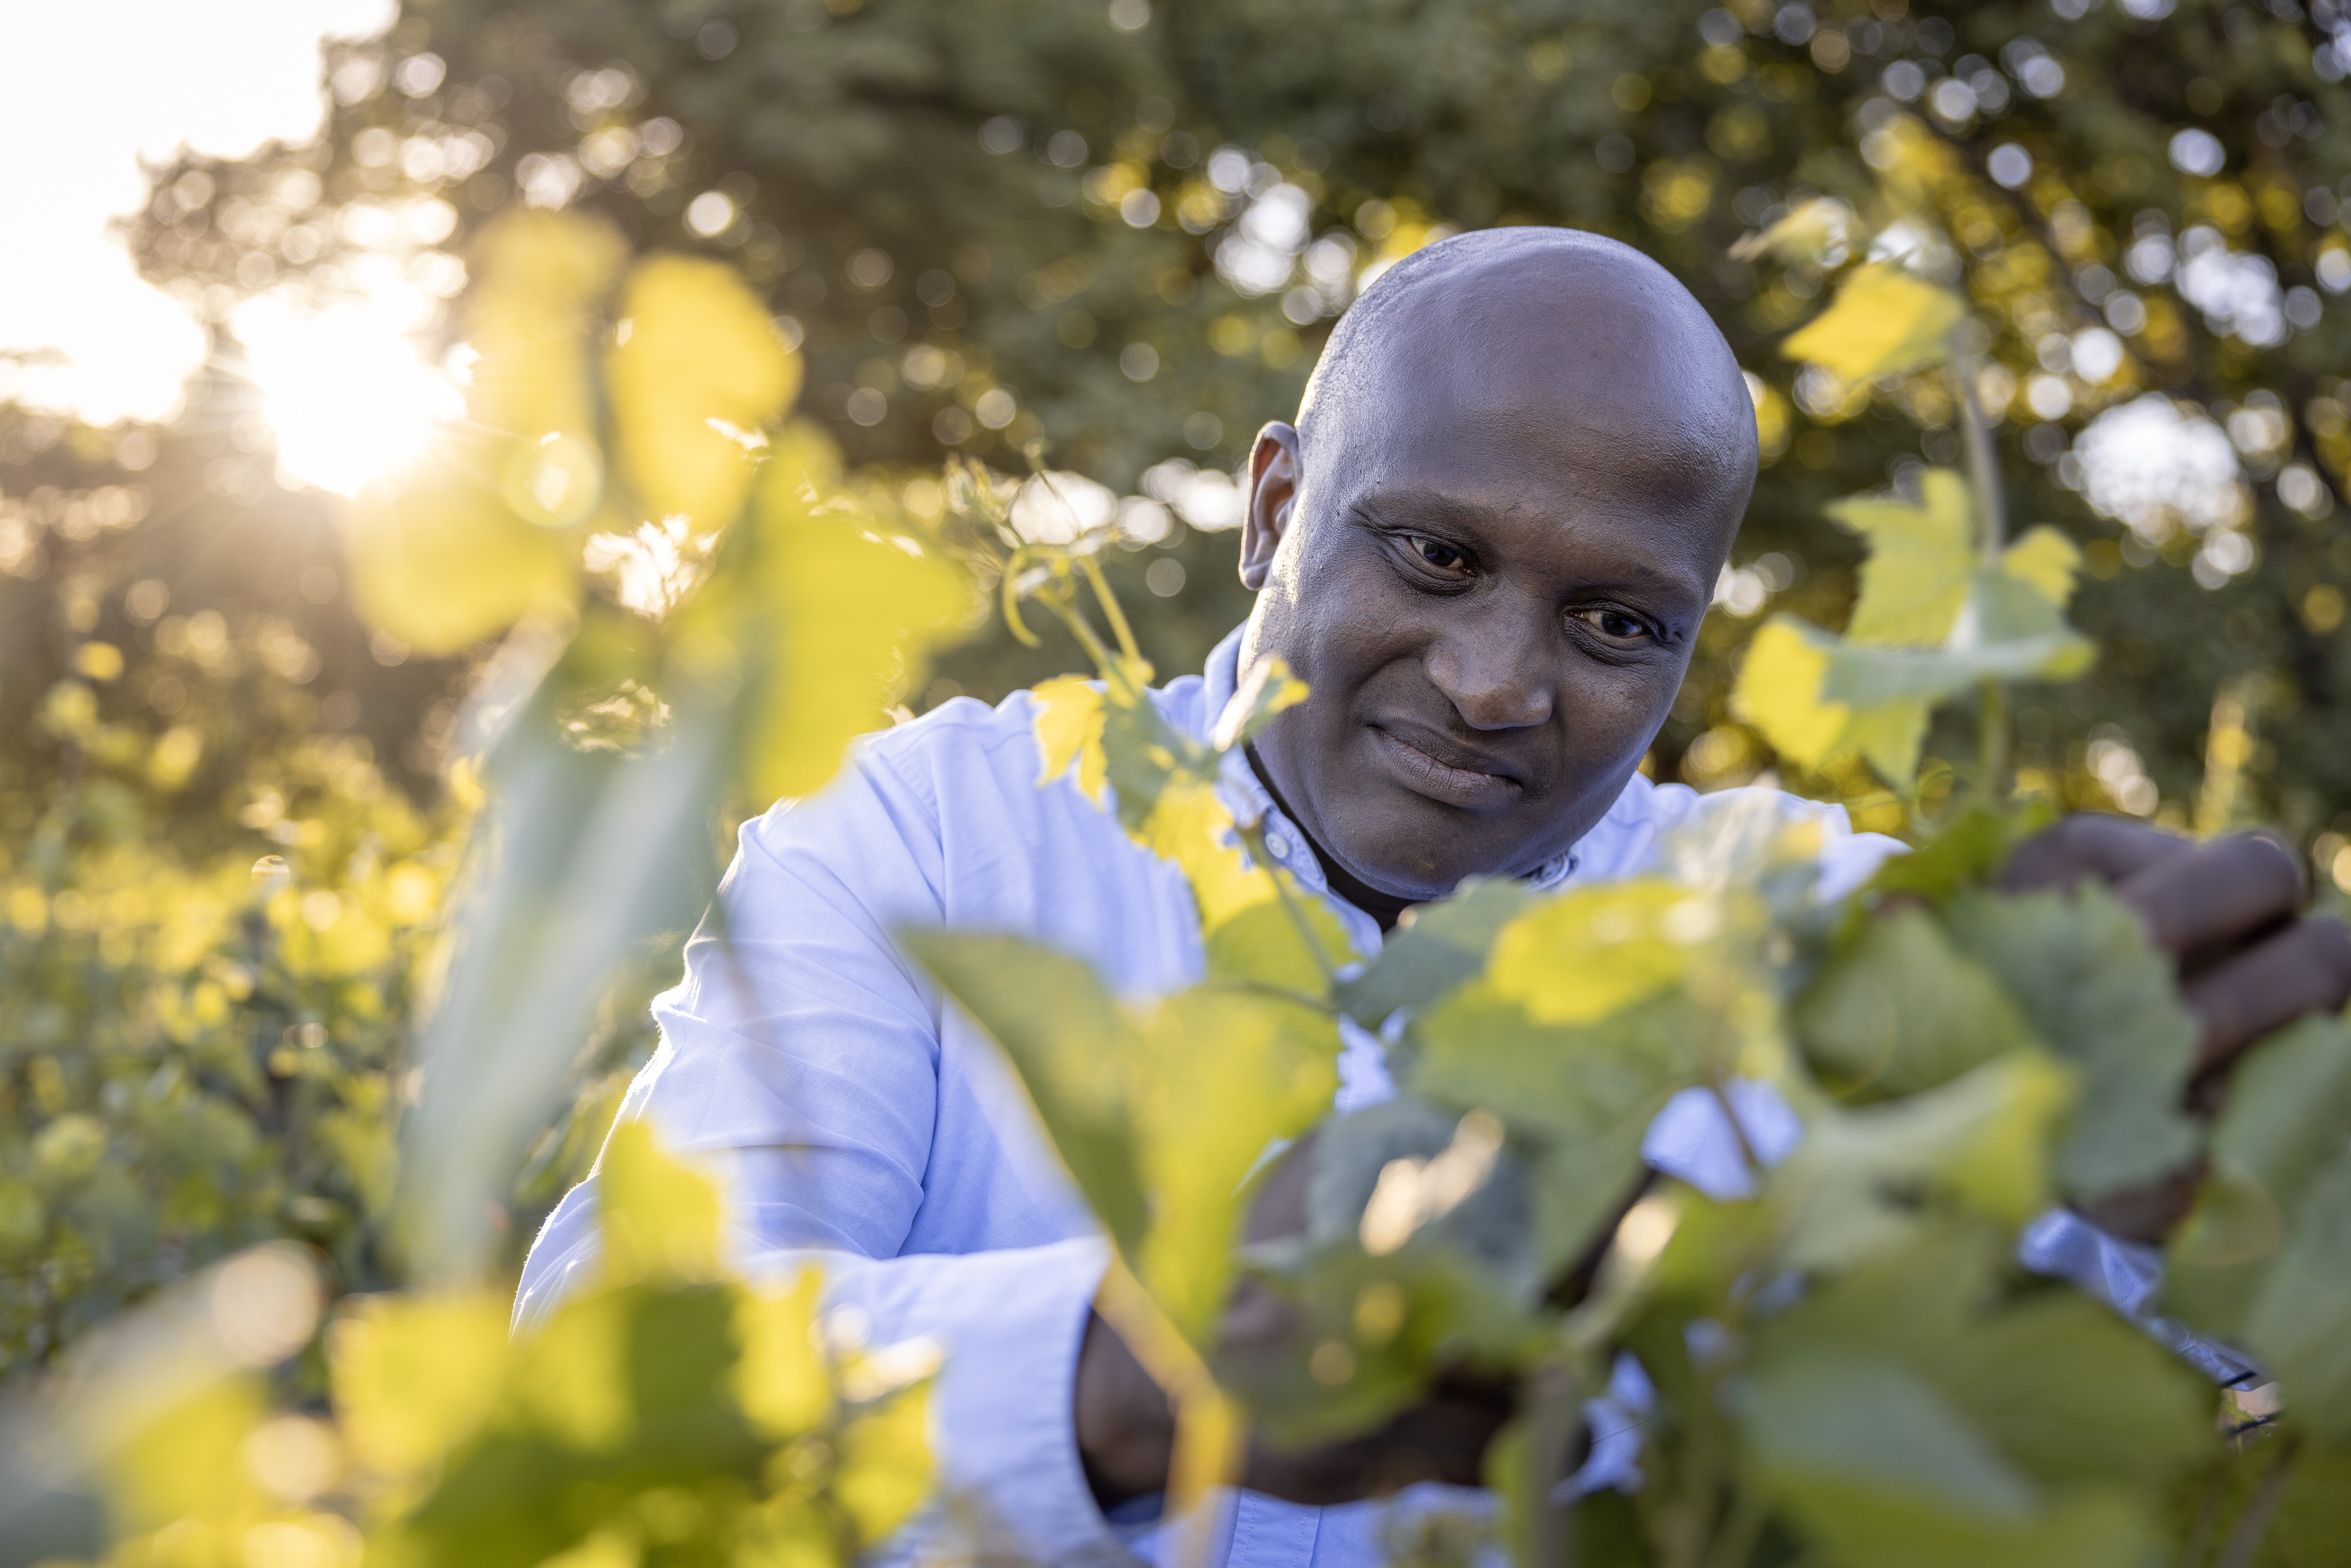 [Luisterverhaal] Meer zwarte wijnboeren in Zuid-Afrika, maar apartheid blijft zichtbaar